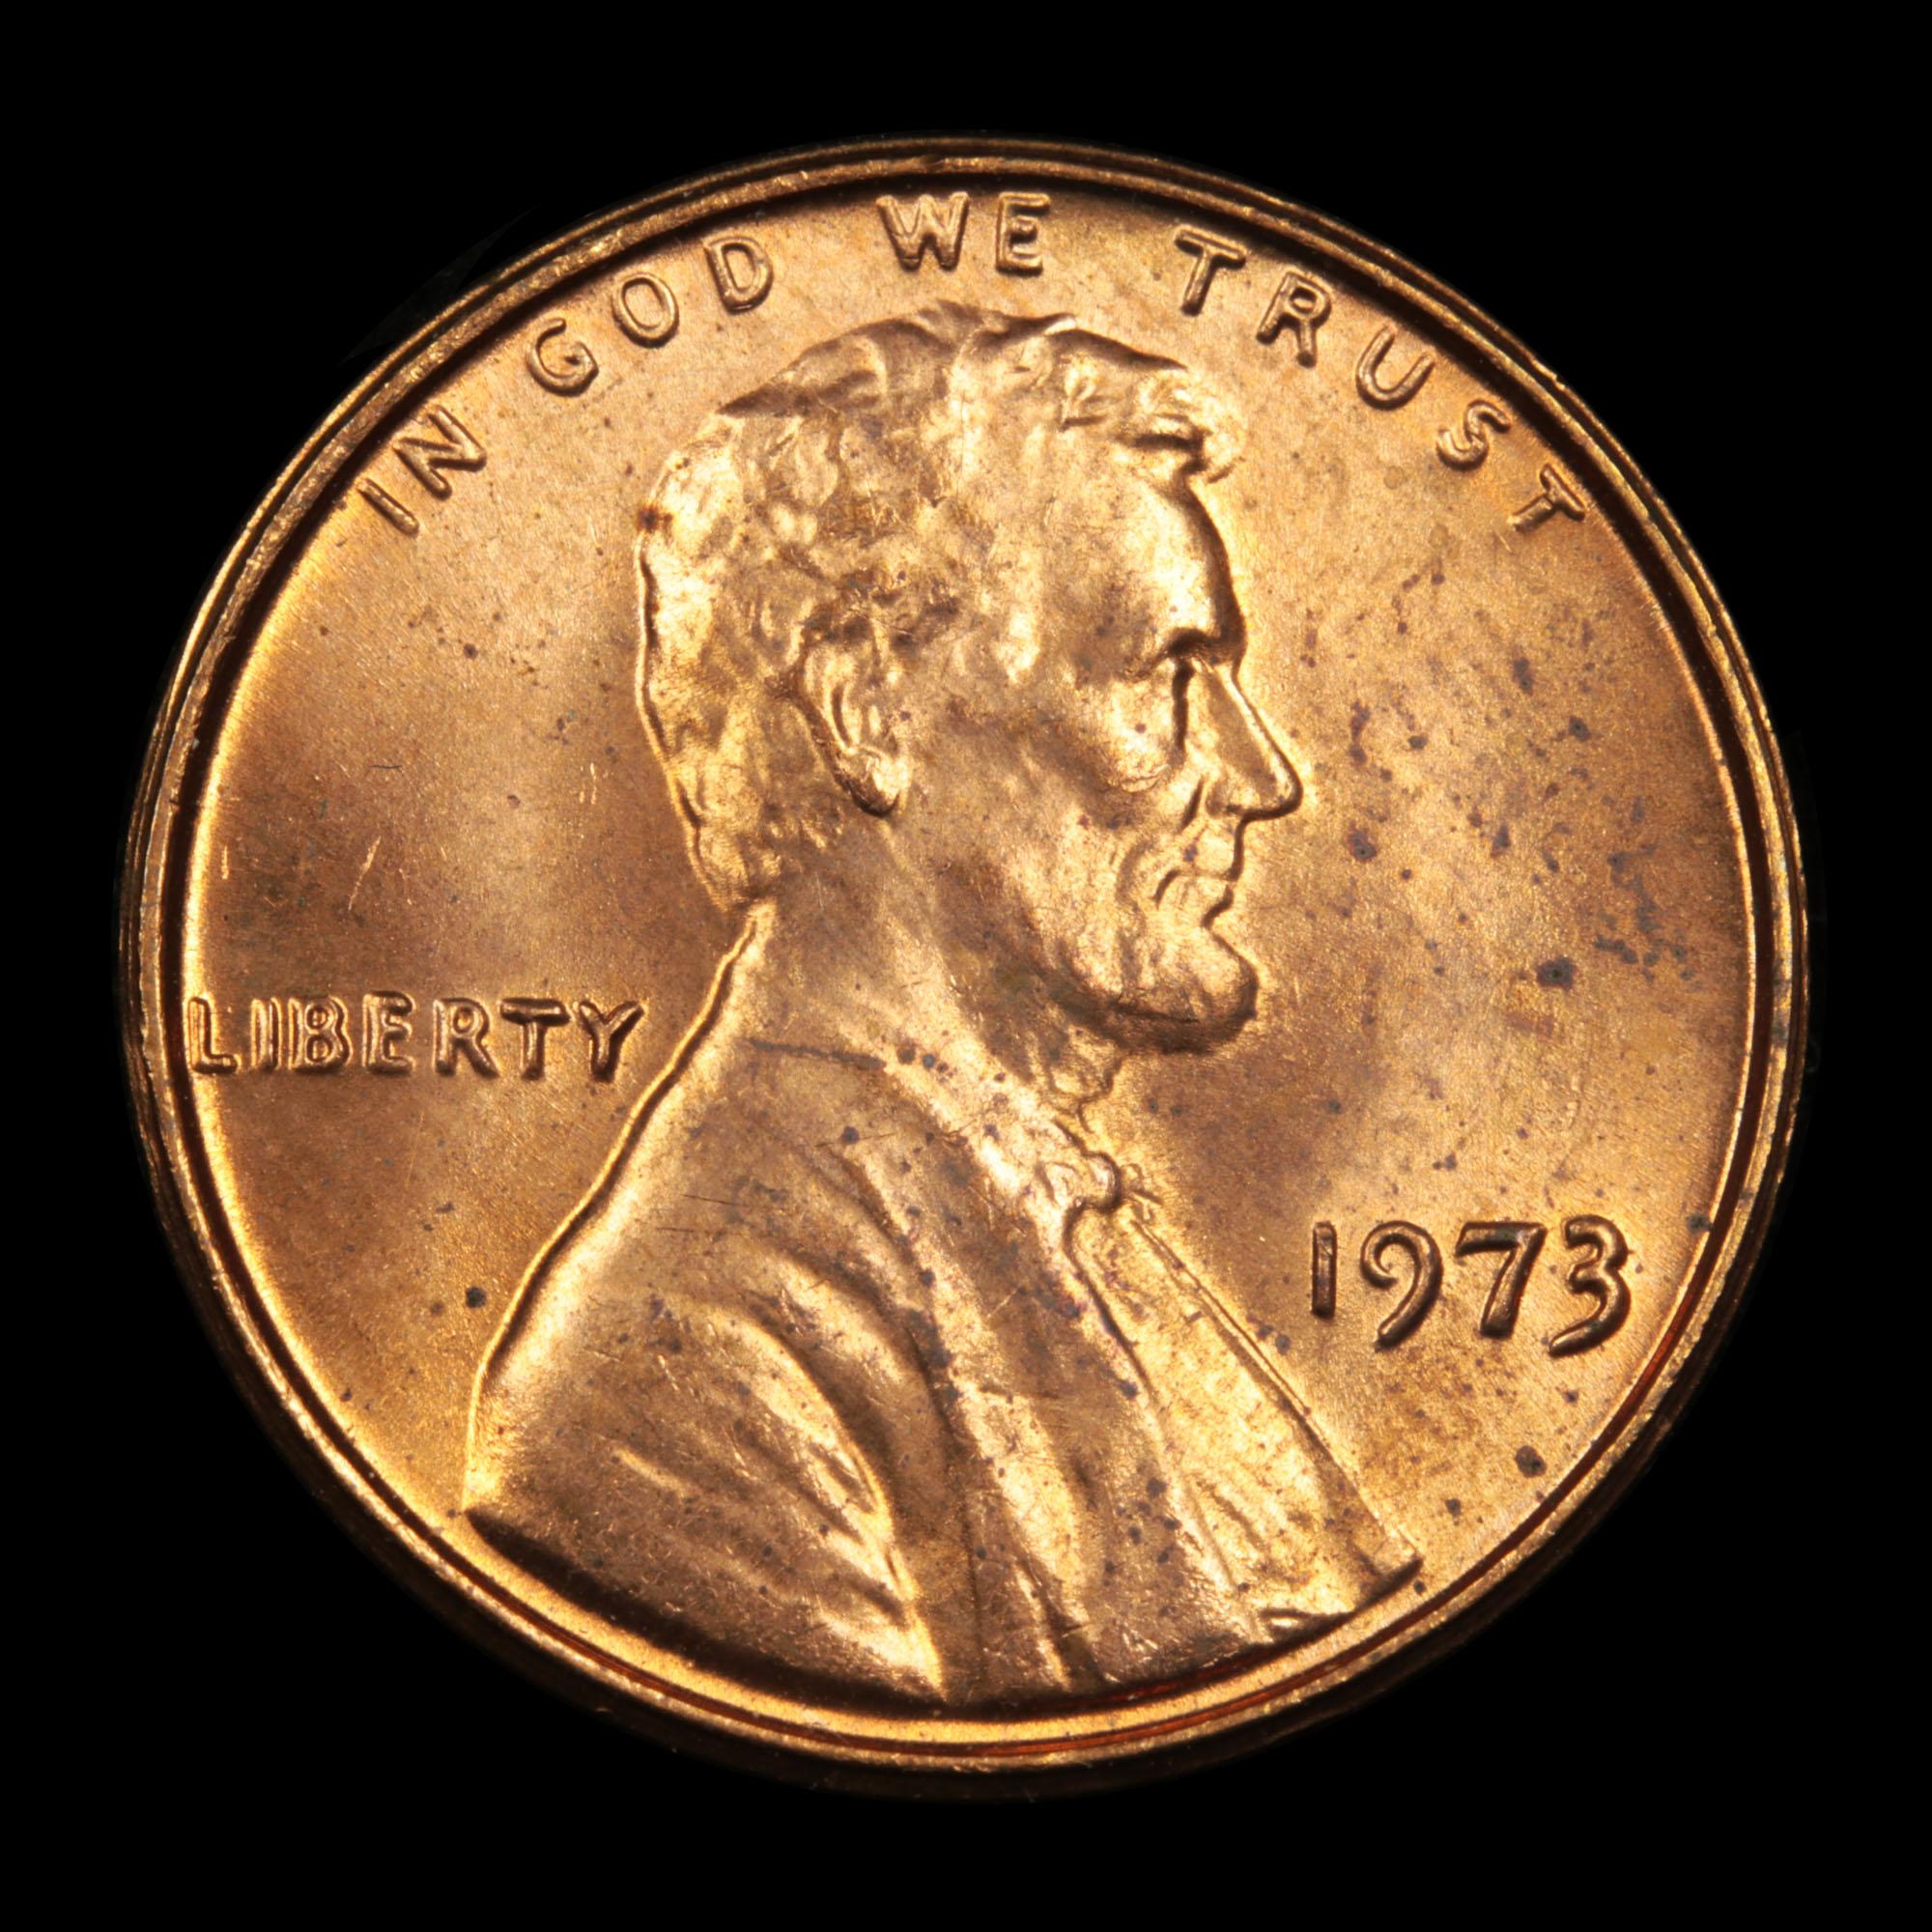 1973-p Lincoln Cent 1c Grades GEM Unc RD